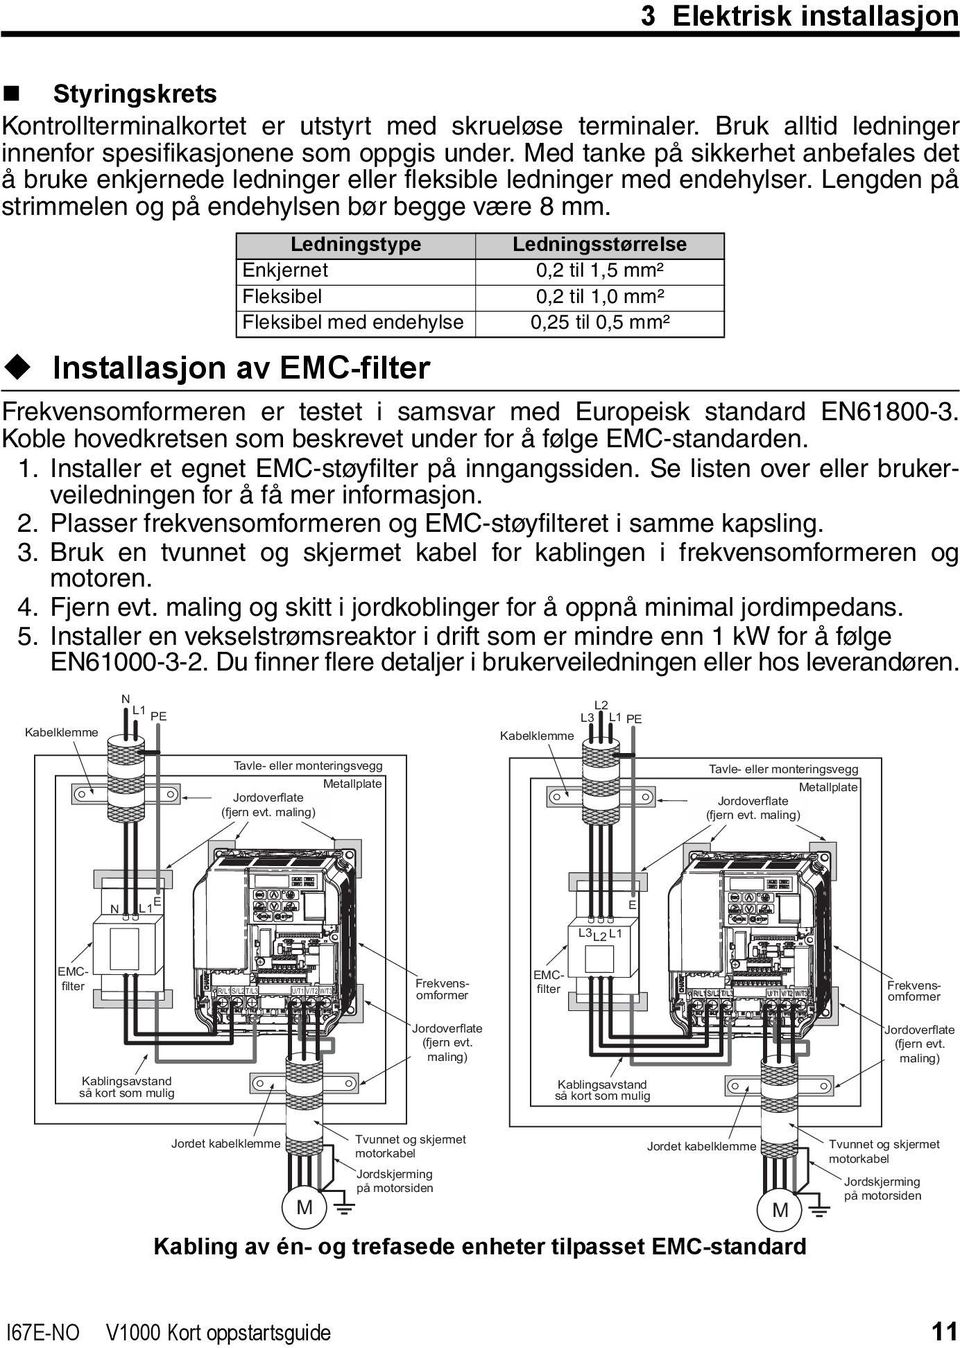 Ledningstype Enkjernet Fleksibel Fleksibel med endehylse Installasjon av EMC-filter Ledningsstørrelse 0,2 til 1,5 mm² 0,2 til 1,0 mm² 0,25 til 0,5 mm² Frekvensomformeren er testet i samsvar med